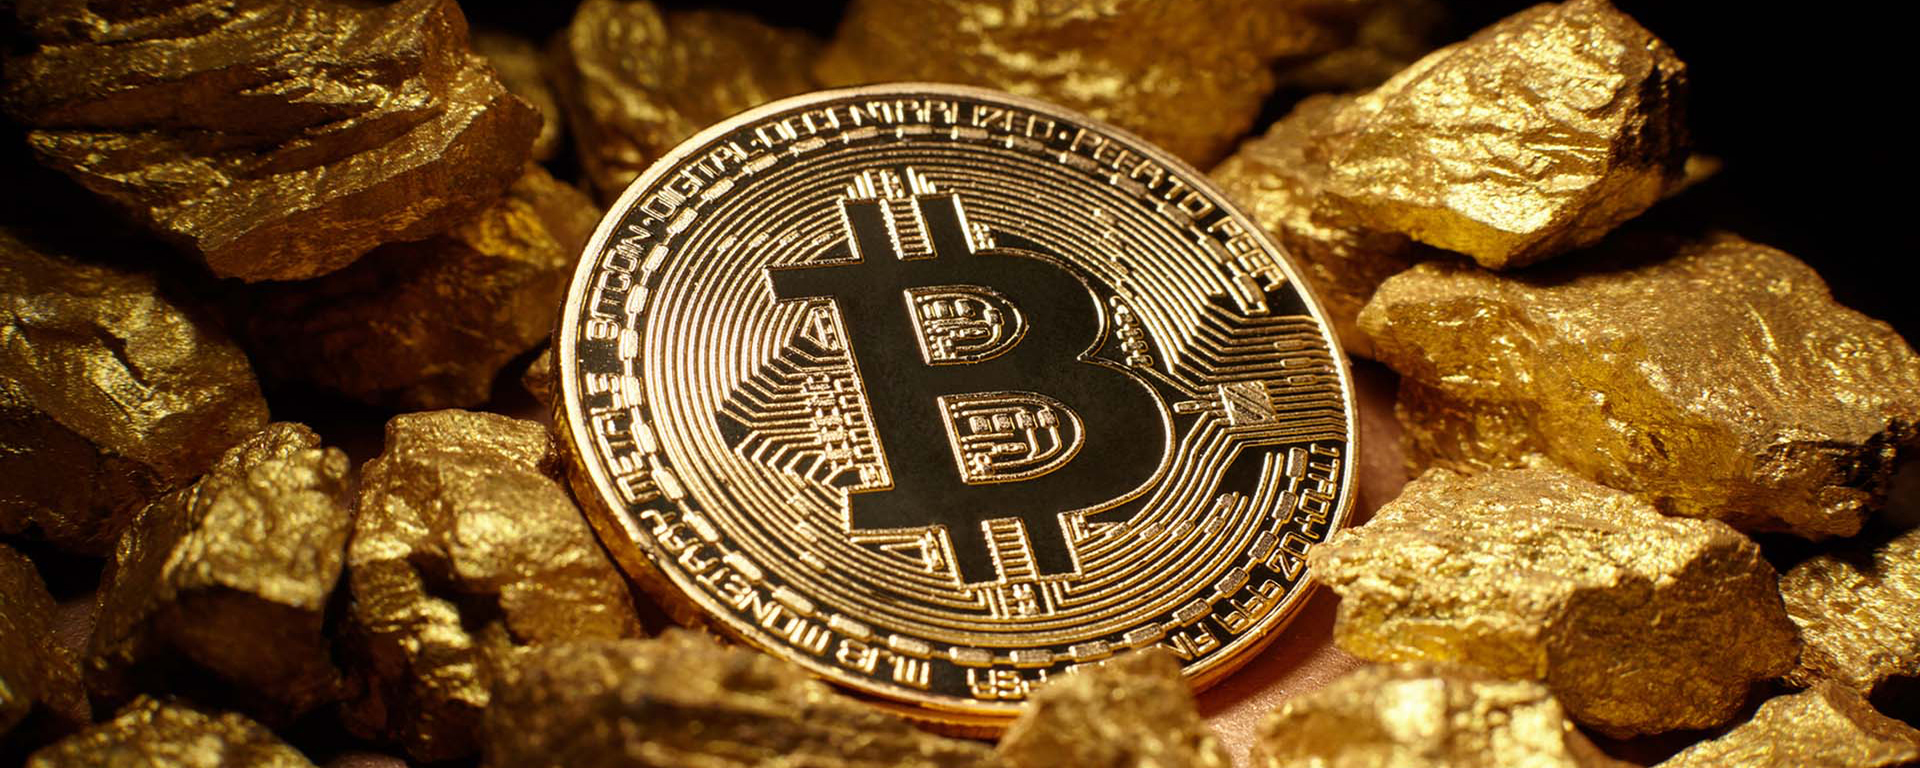 bitcoin cash fork 13 11